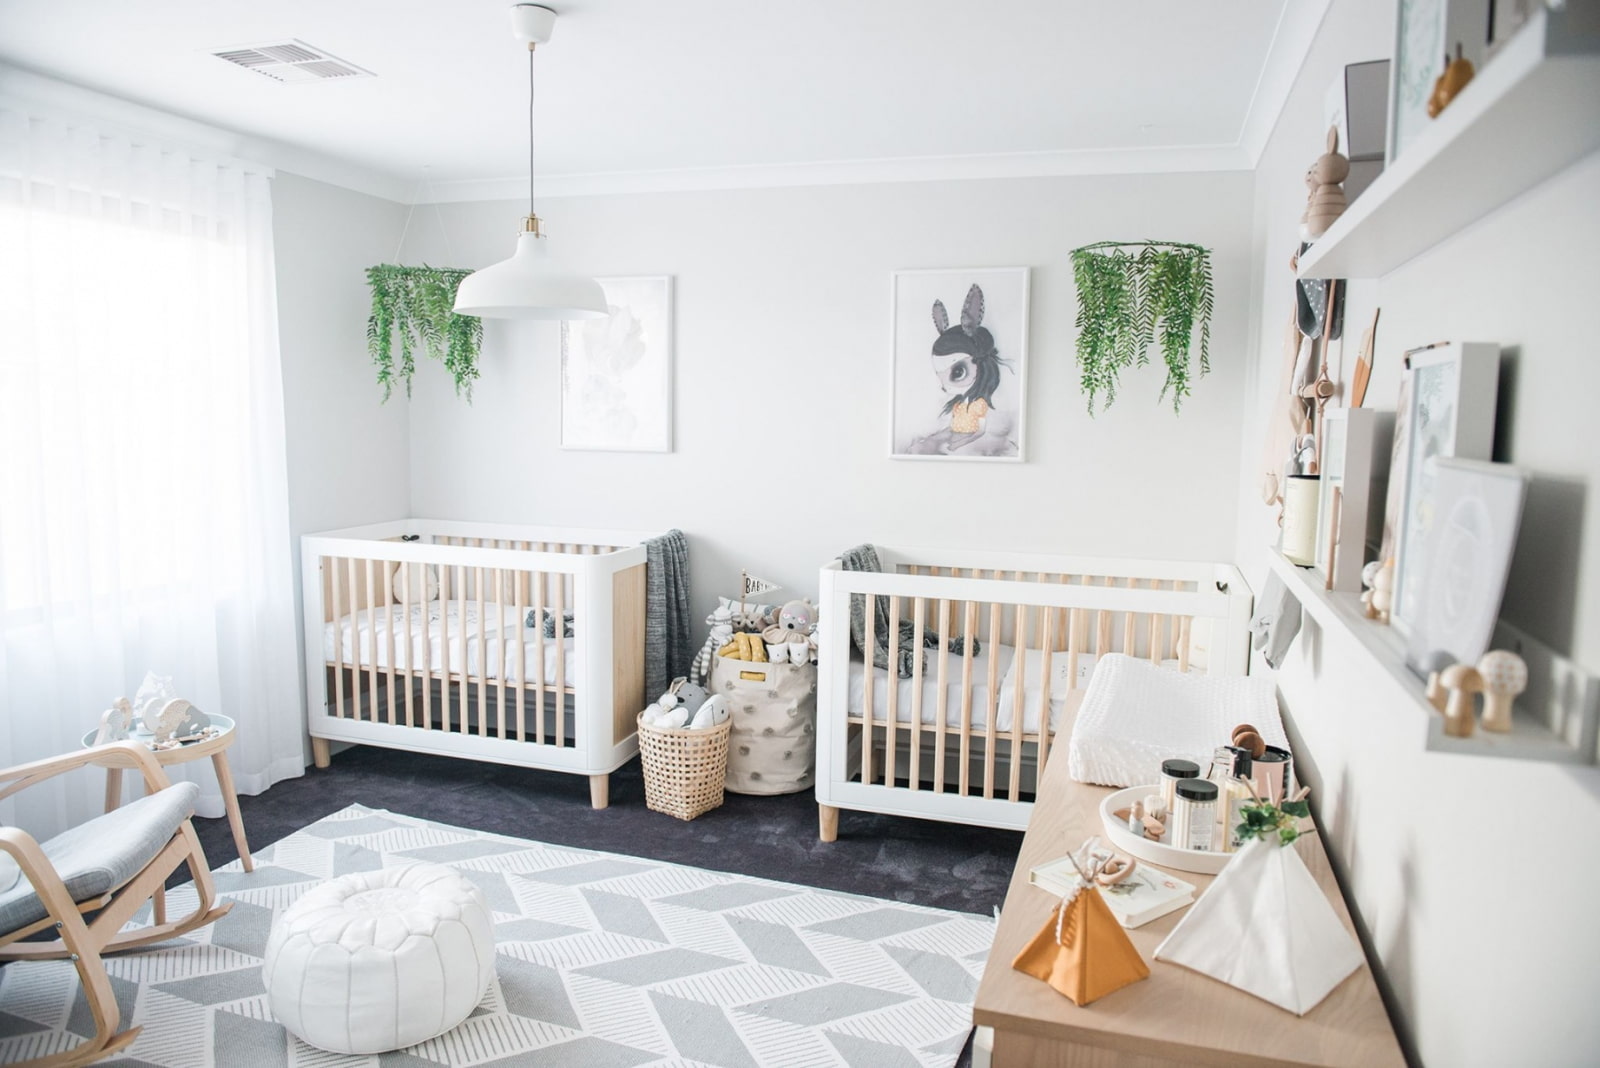 חדר לתינוק: בחירת עריסה, אפשרויות סידור, צילום